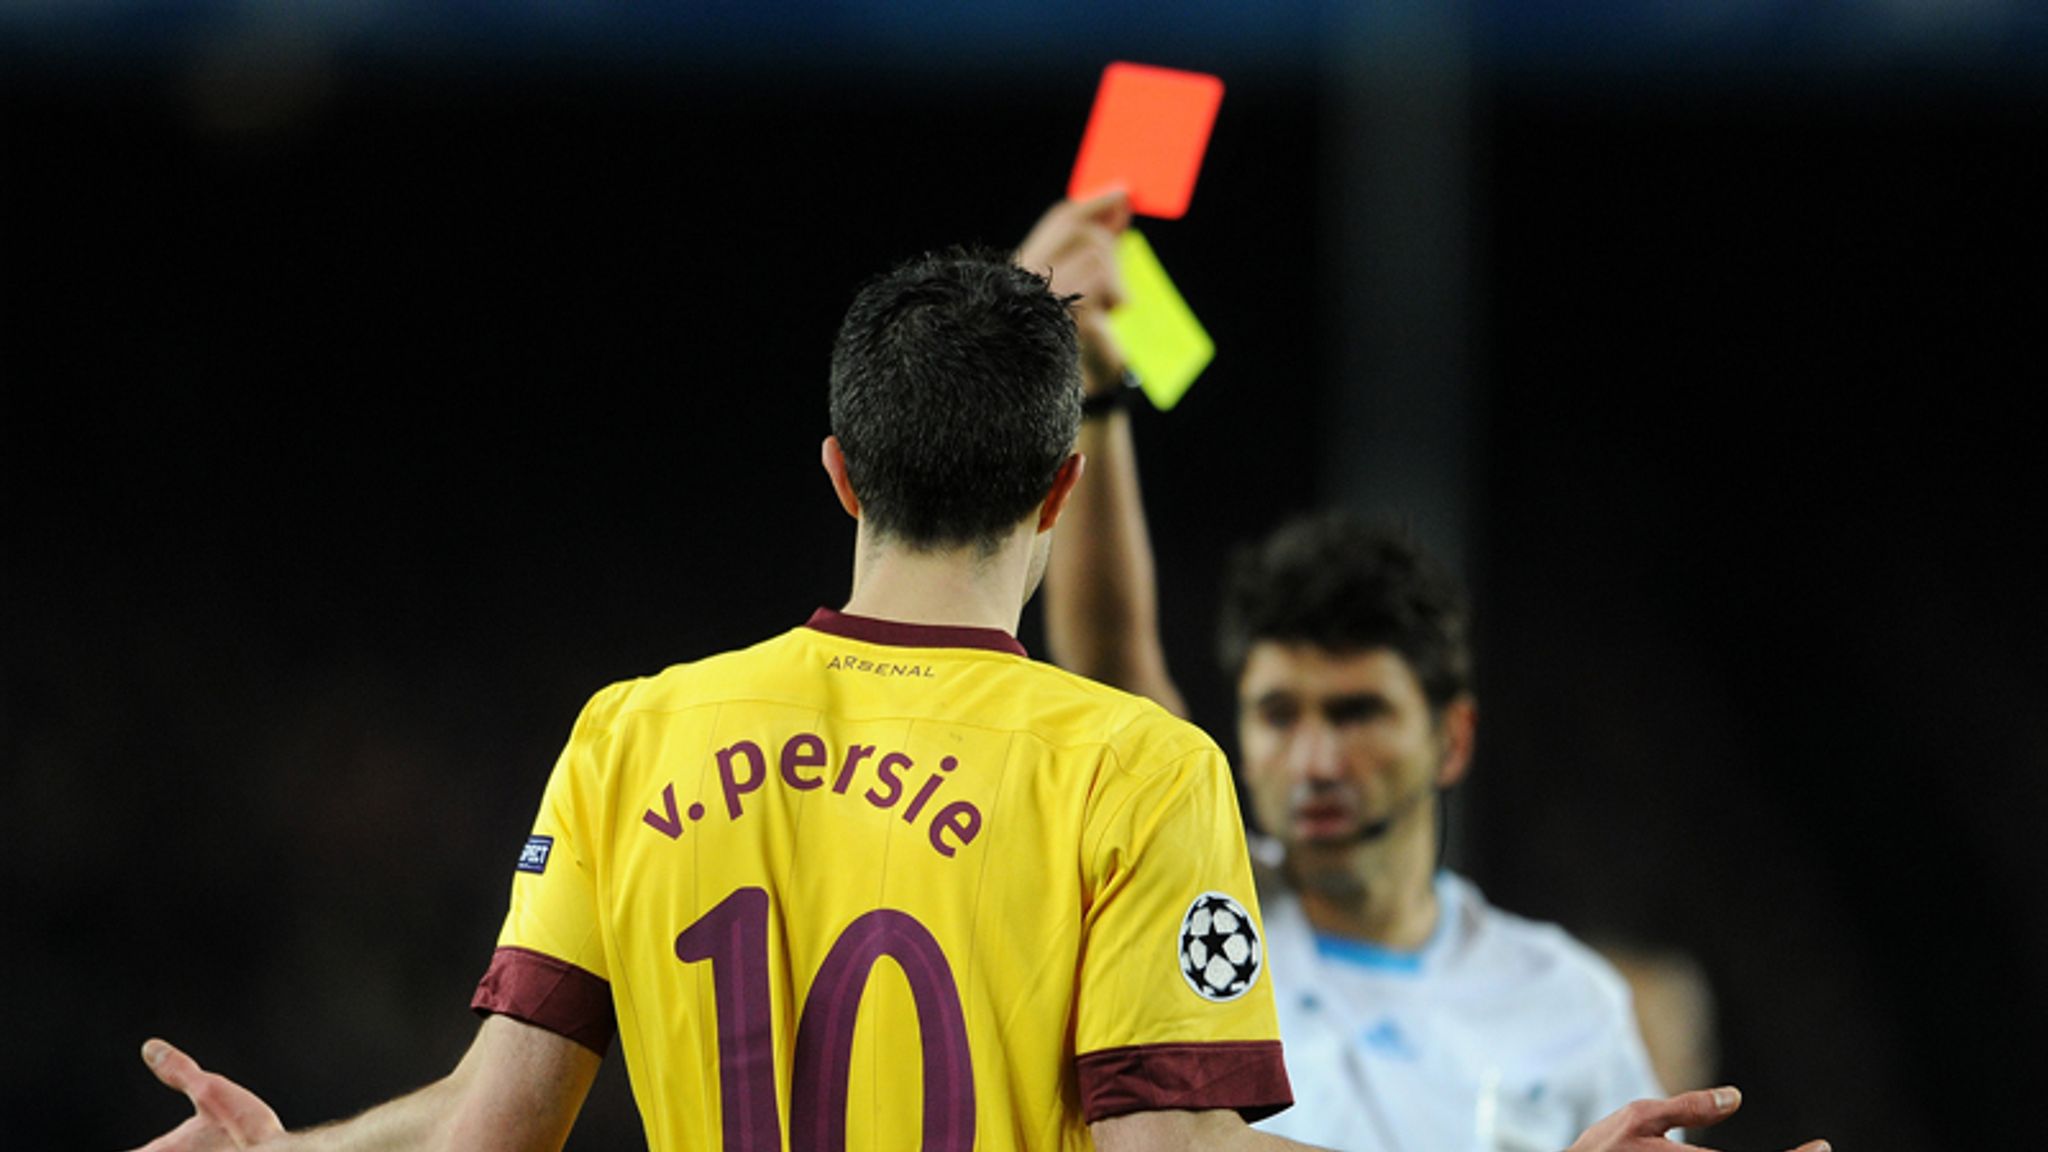 Van Persie - red card joke | Football News | Sky Sports